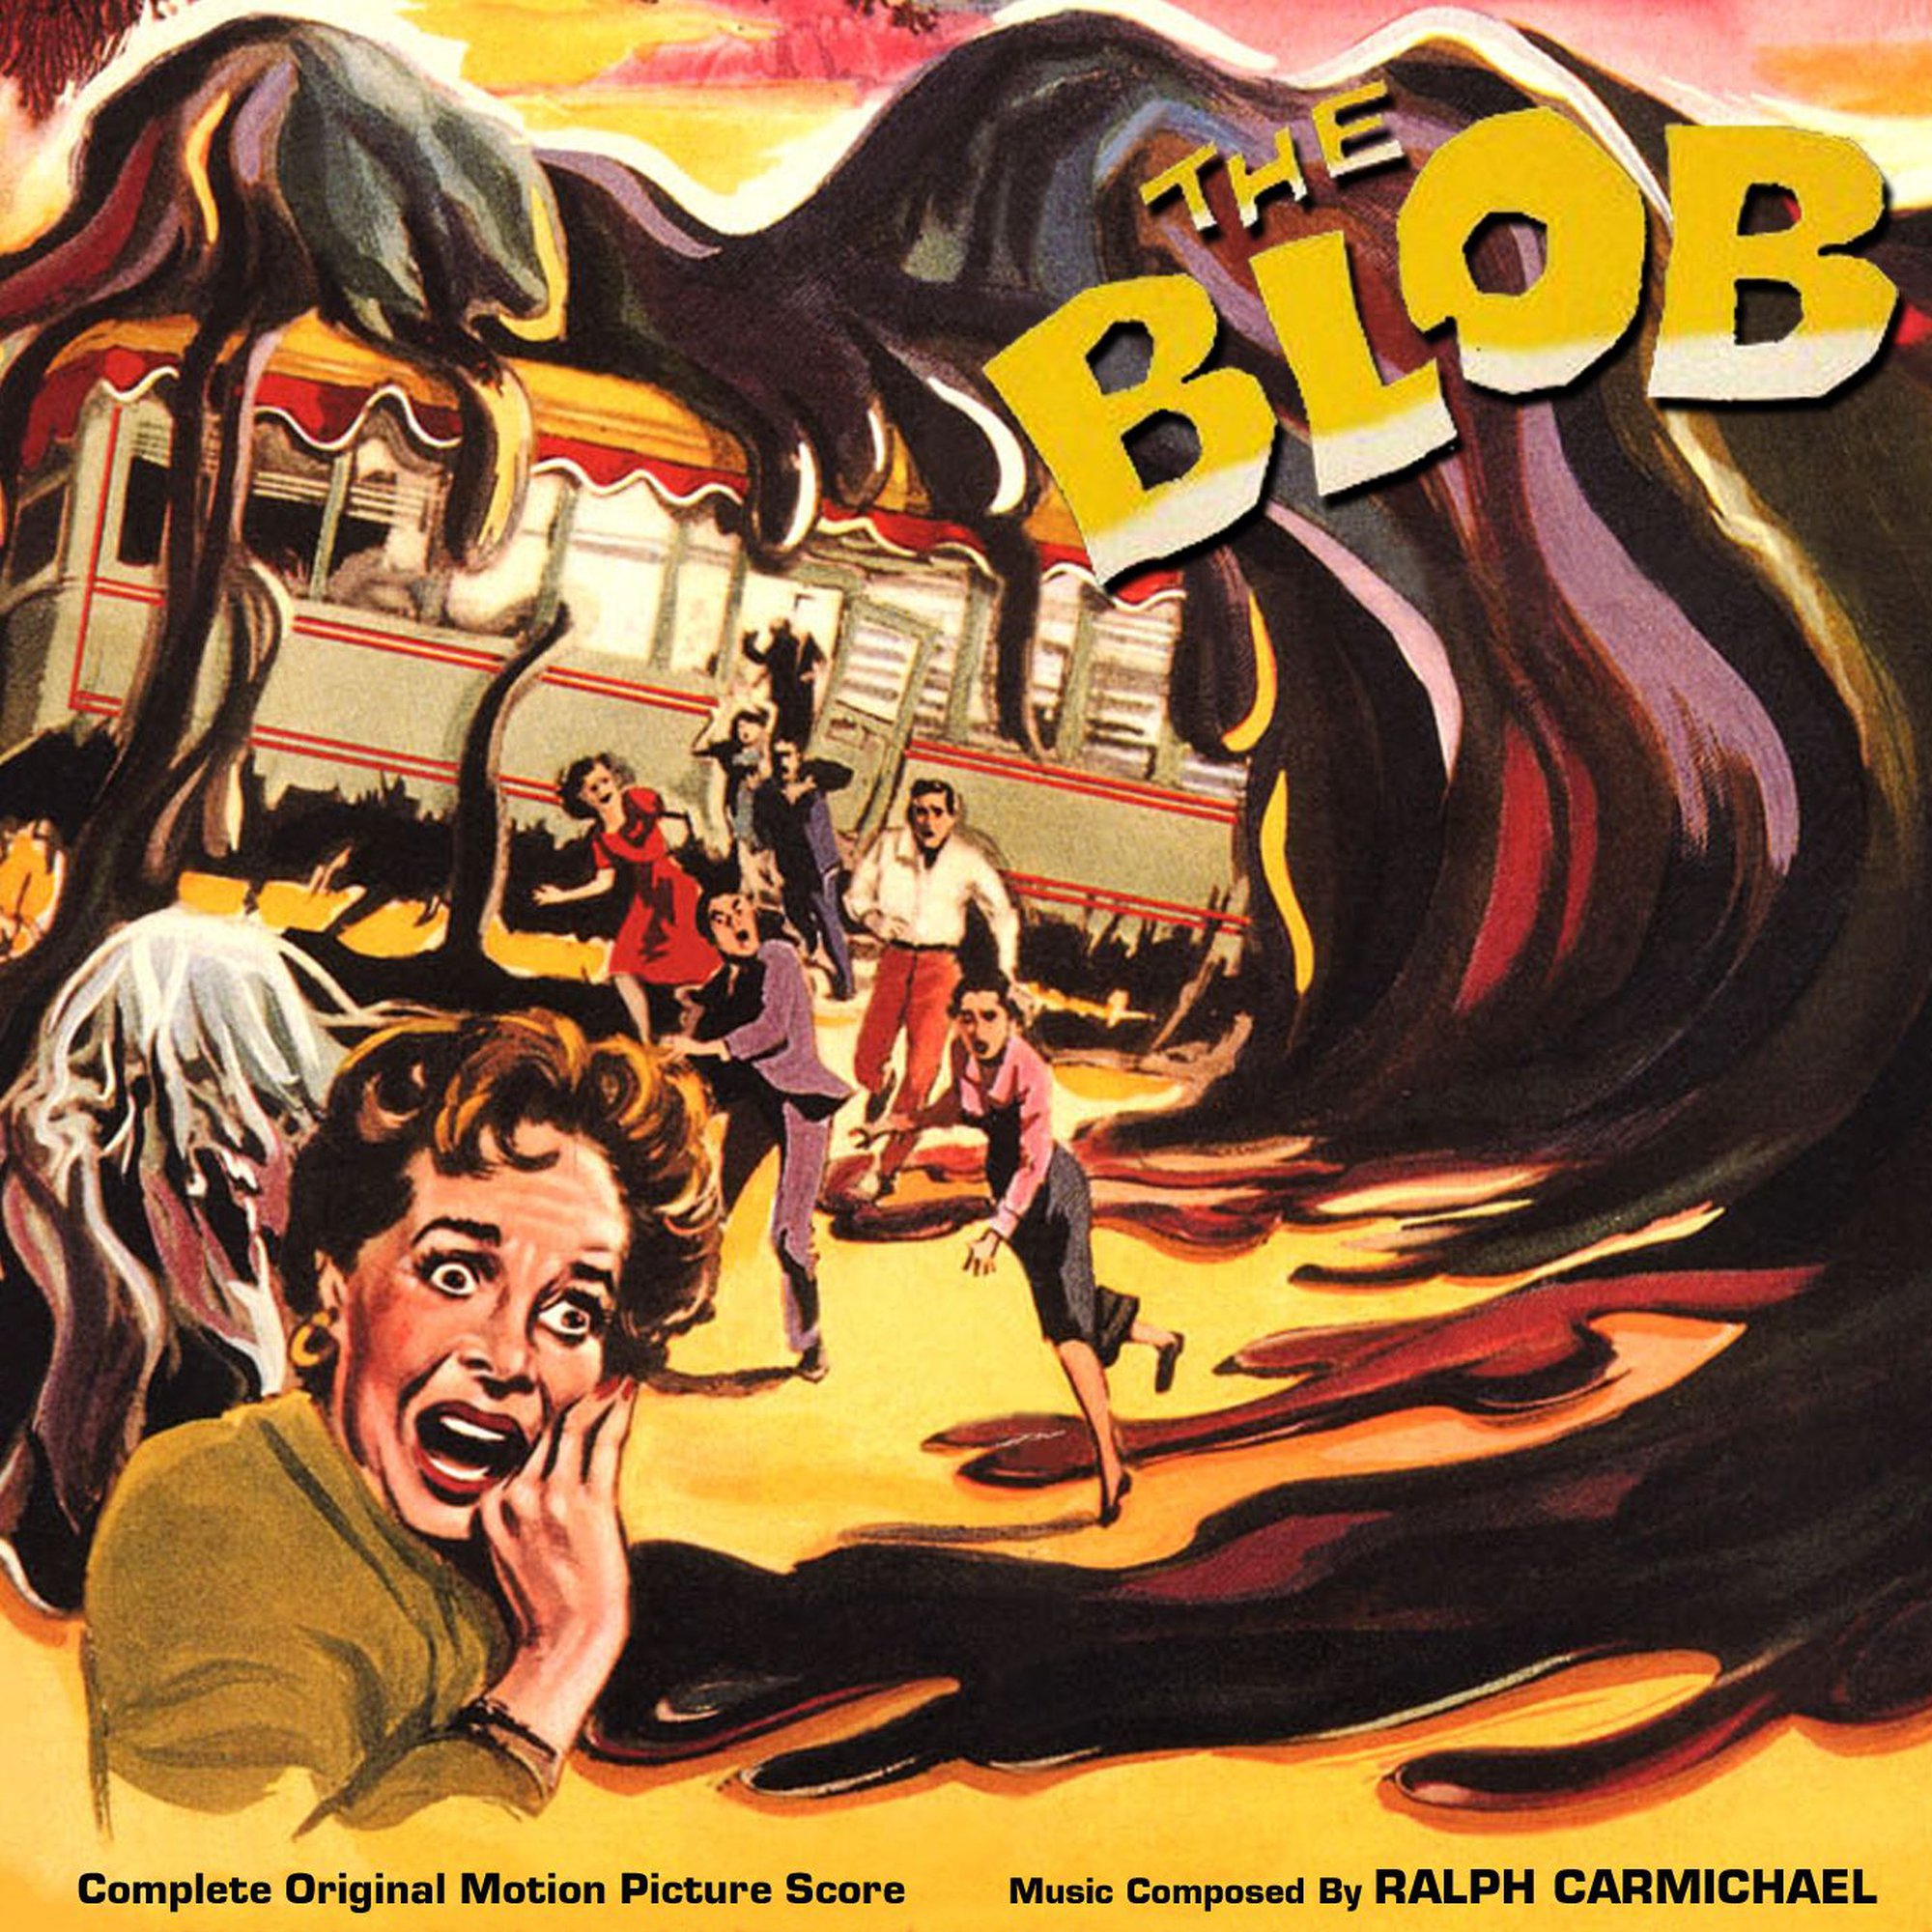 The Blob, 1958